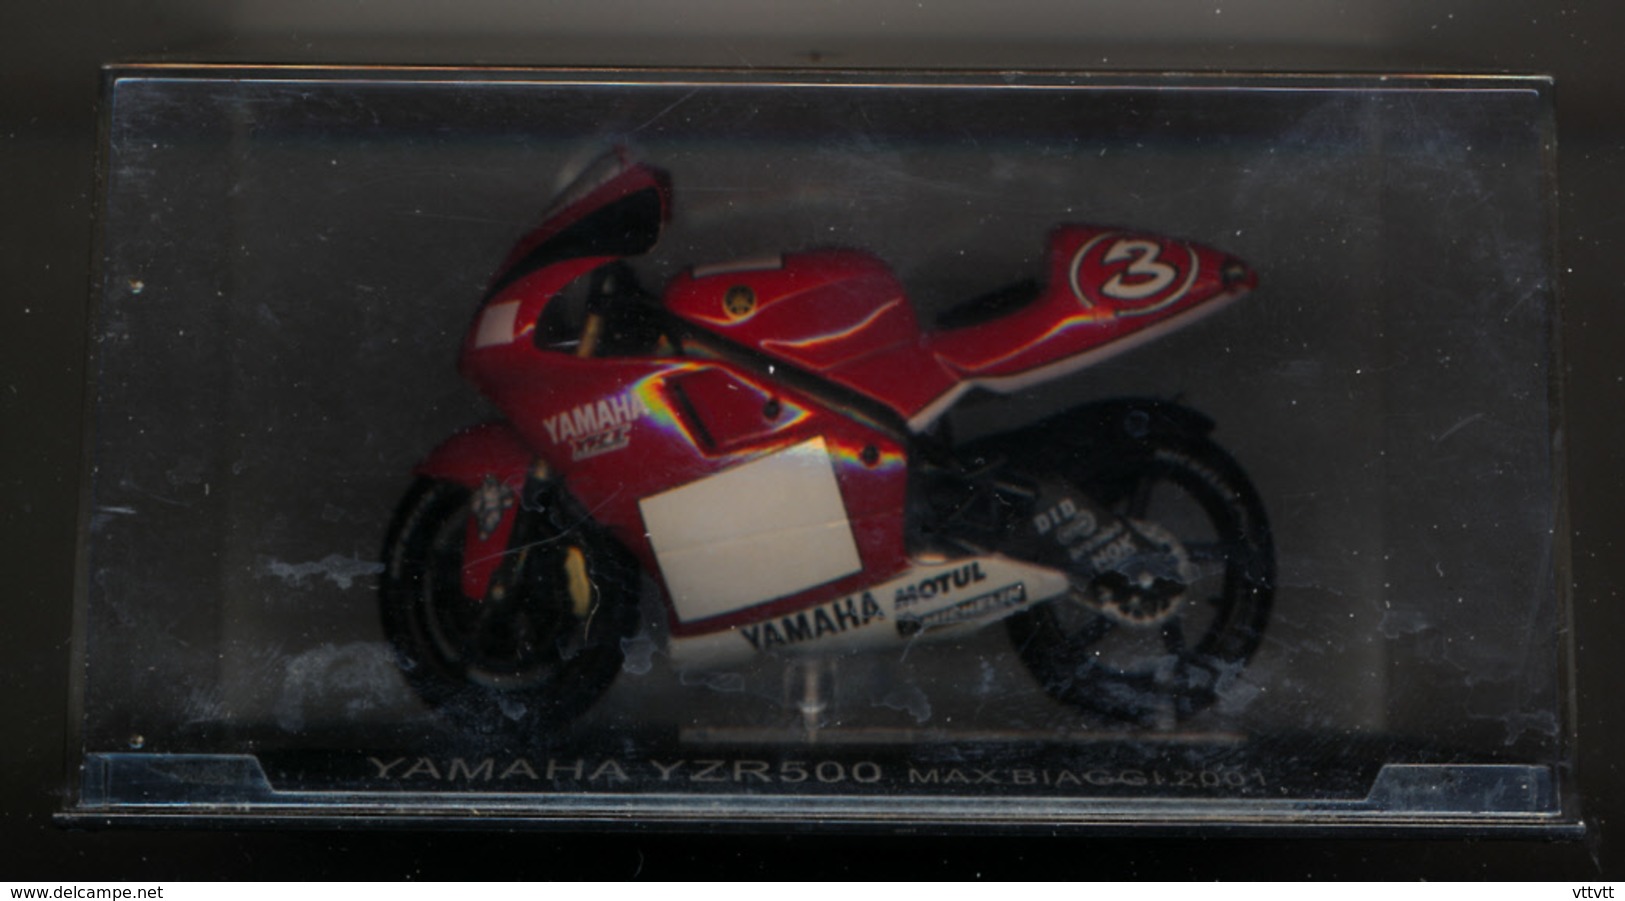 MOTO GP : YAMAHA YZR 500, MAX BIAGGI, 2001 - Motorcycles